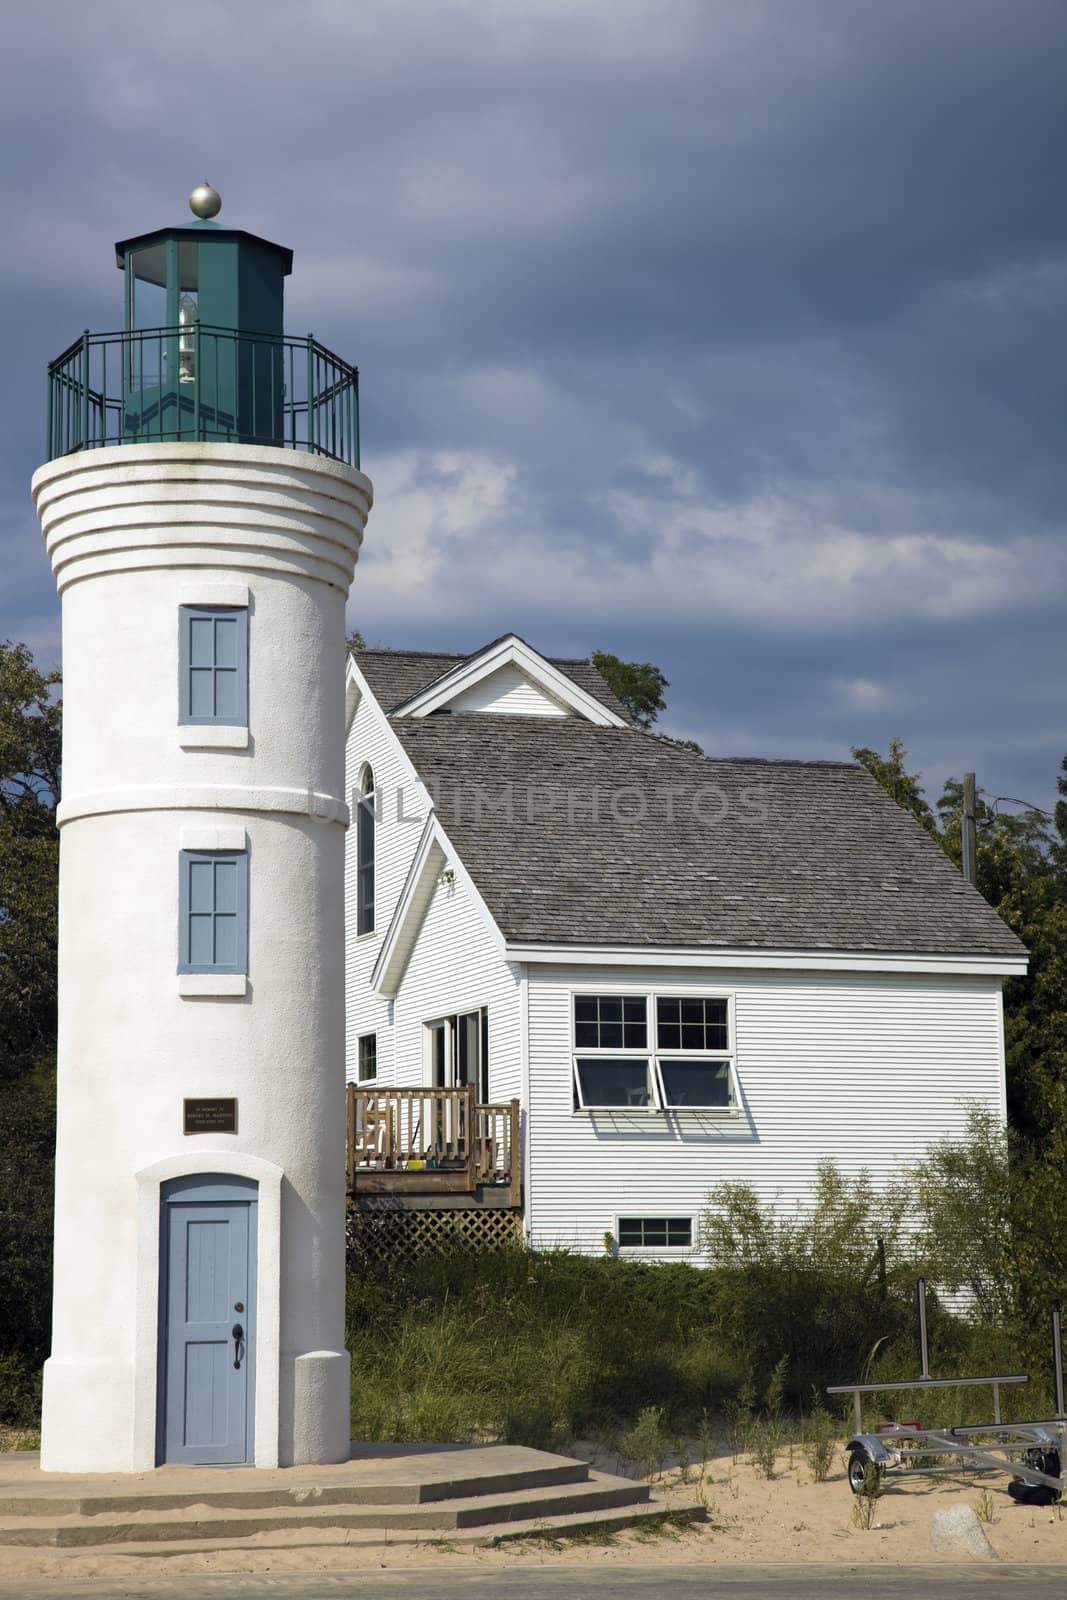 Robert H. Manning Memorial Lighthouse, Michigan, USA.